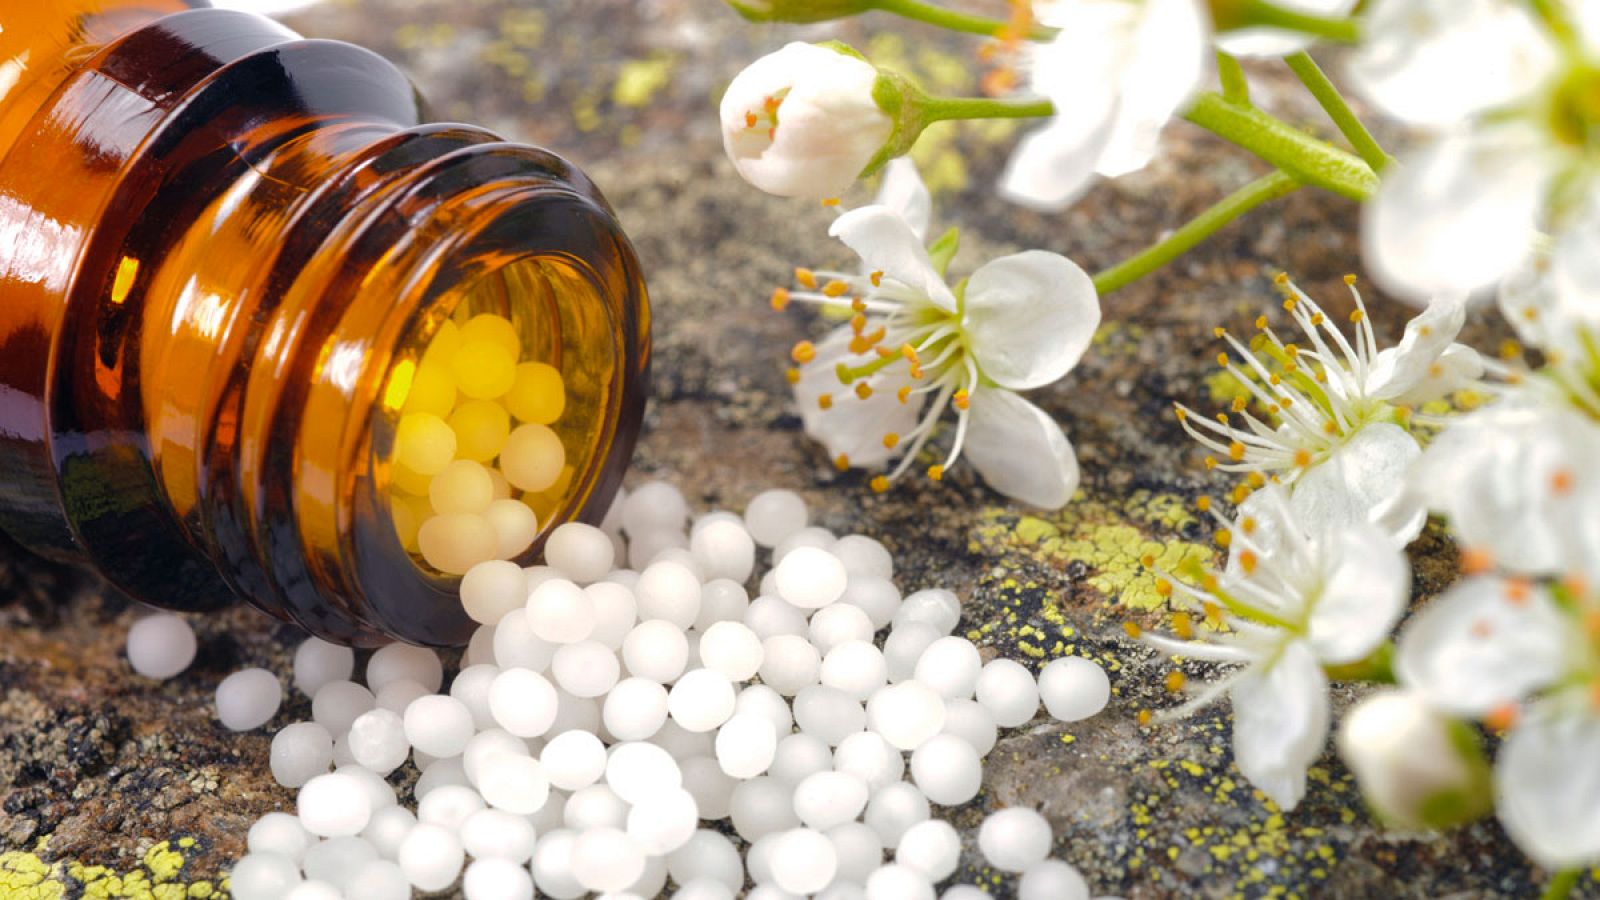 Los productos homeopáticos no tienen que demostrar su eficacia curativa, sino simplemente criterios sanitarios de seguridad.